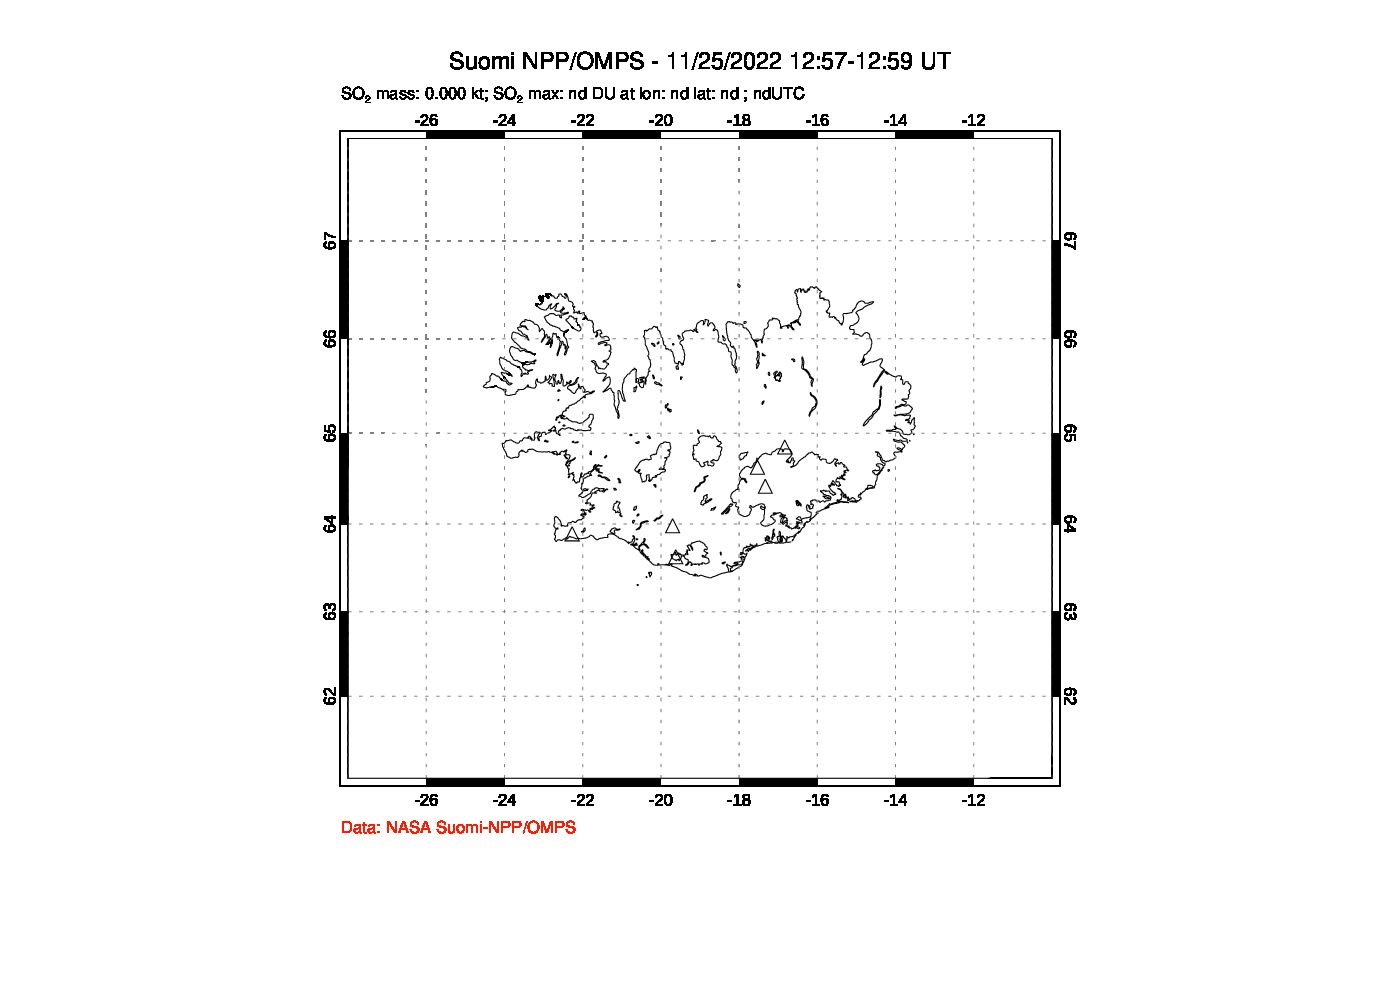 A sulfur dioxide image over Iceland on Nov 25, 2022.